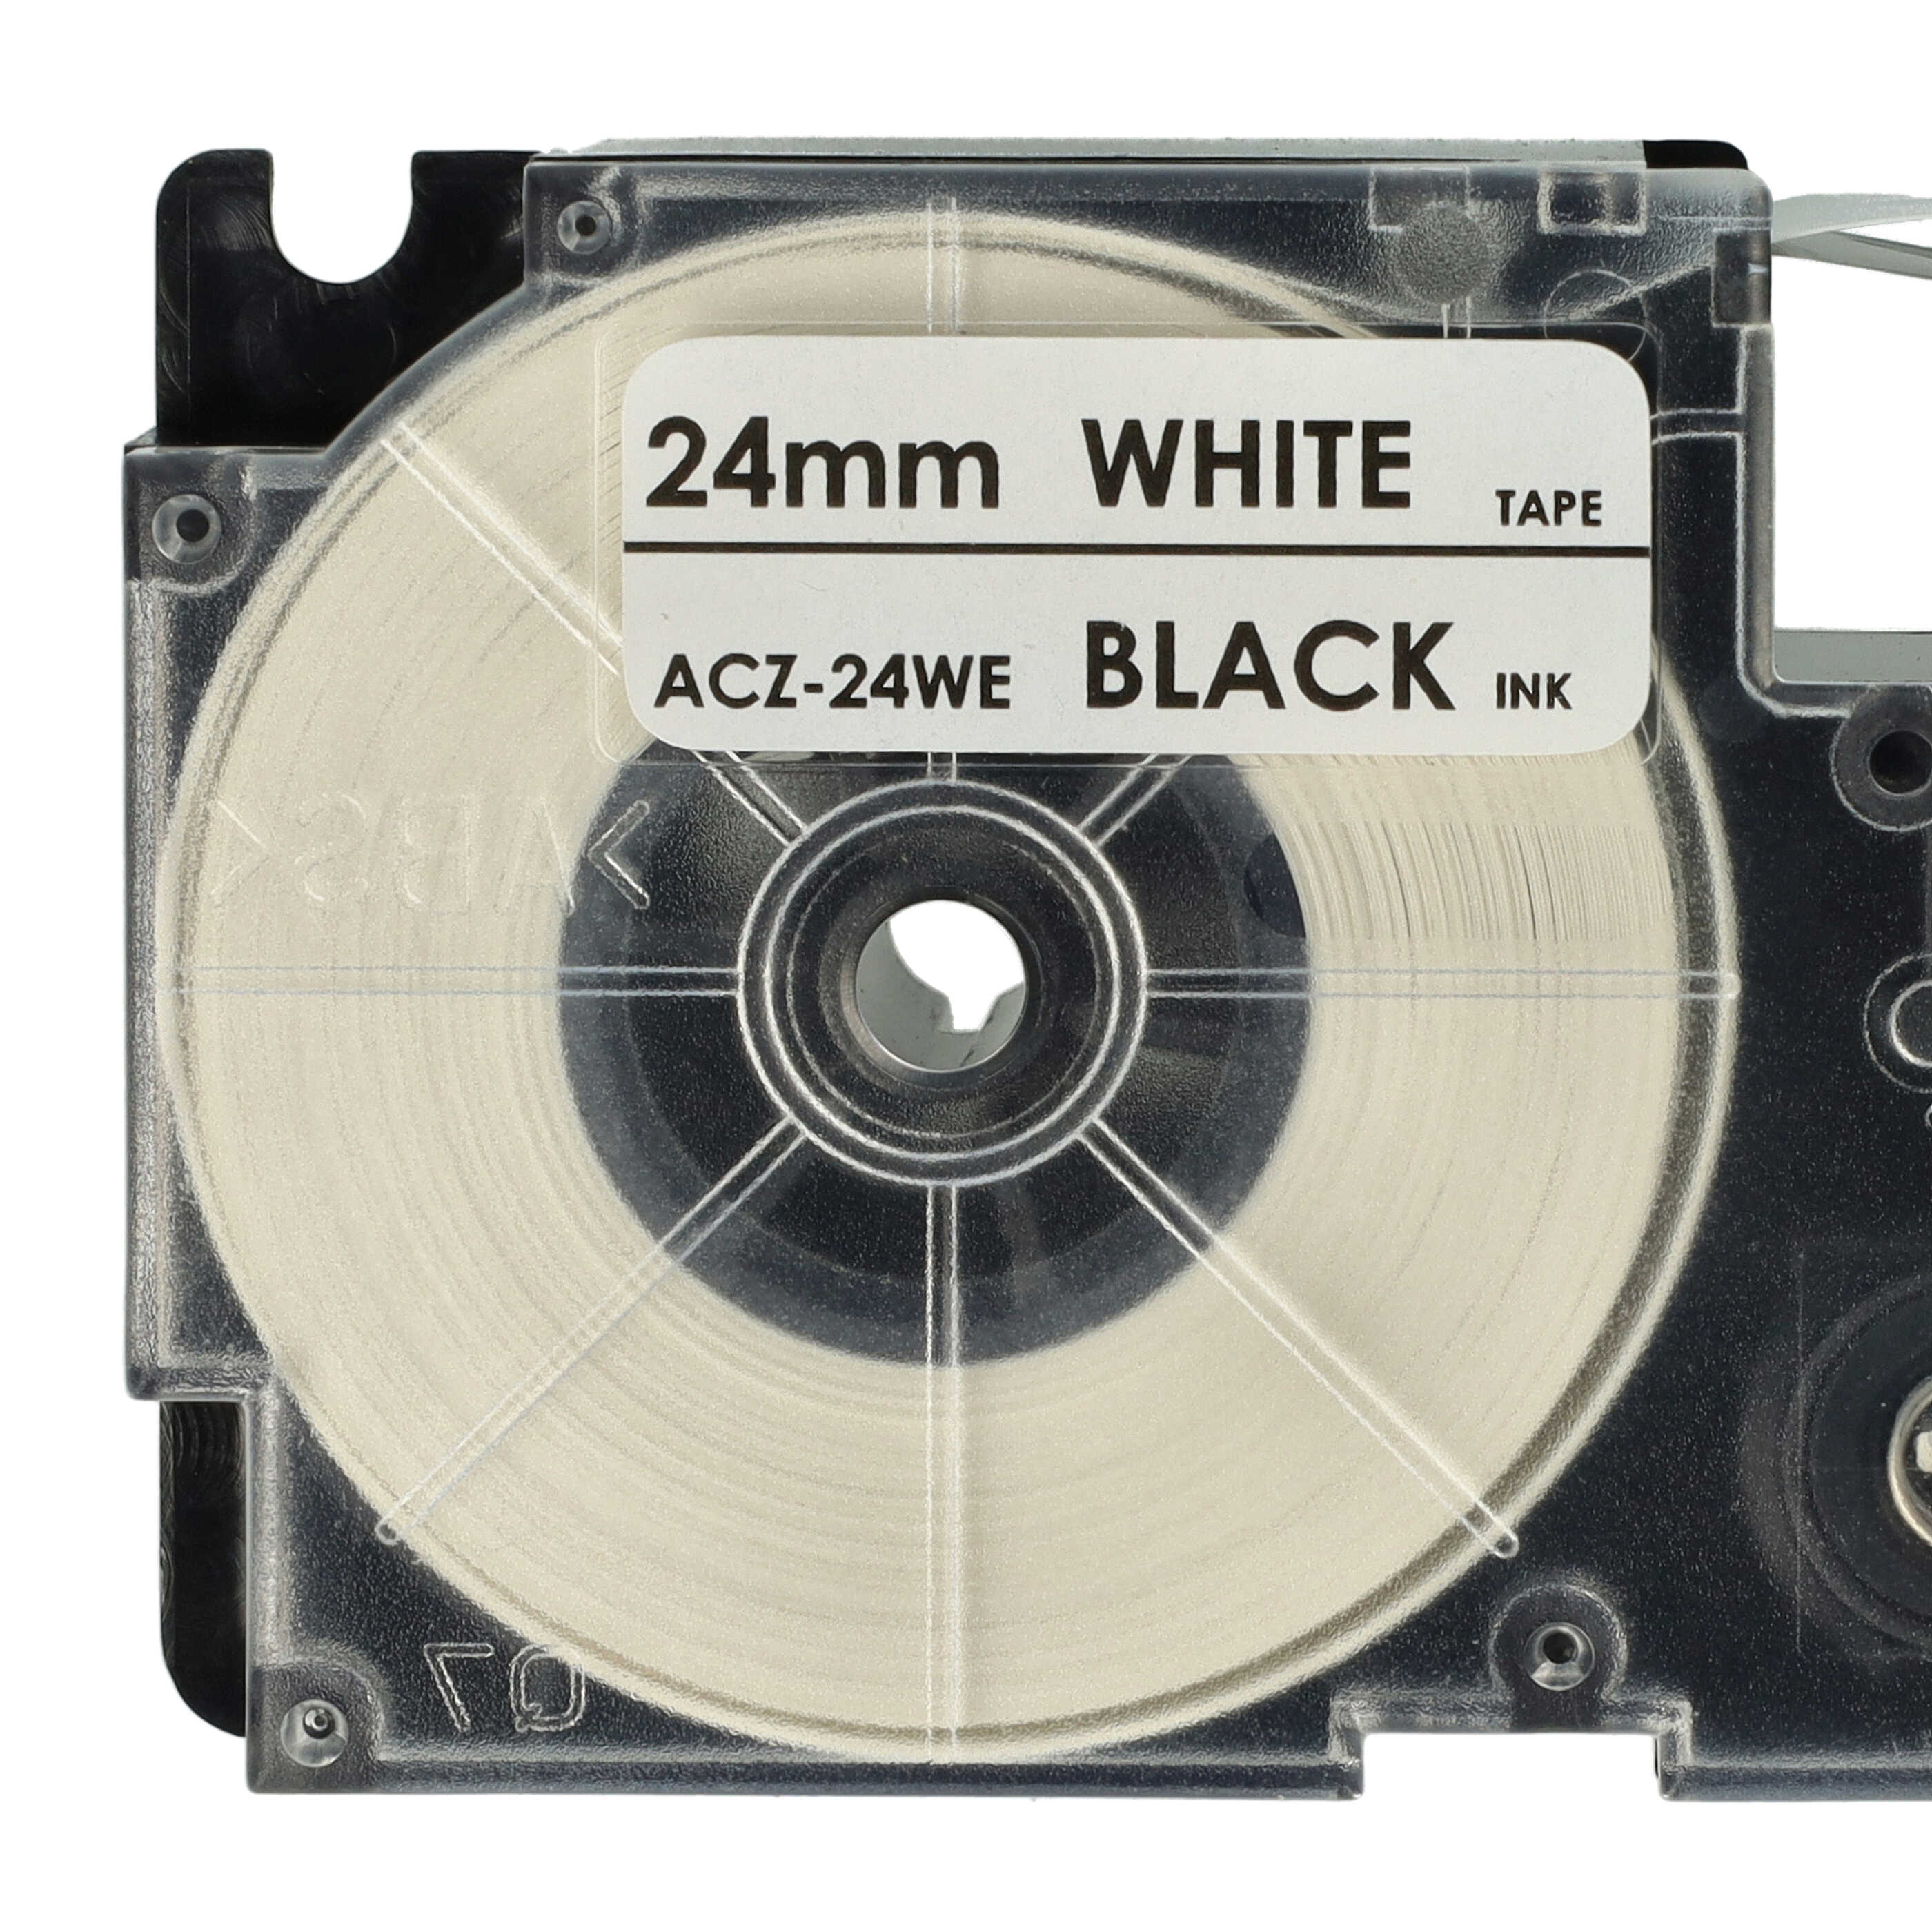 Casete cinta escritura reemplaza Casio XR-24WE1, XR-24WE Negro su Blanco